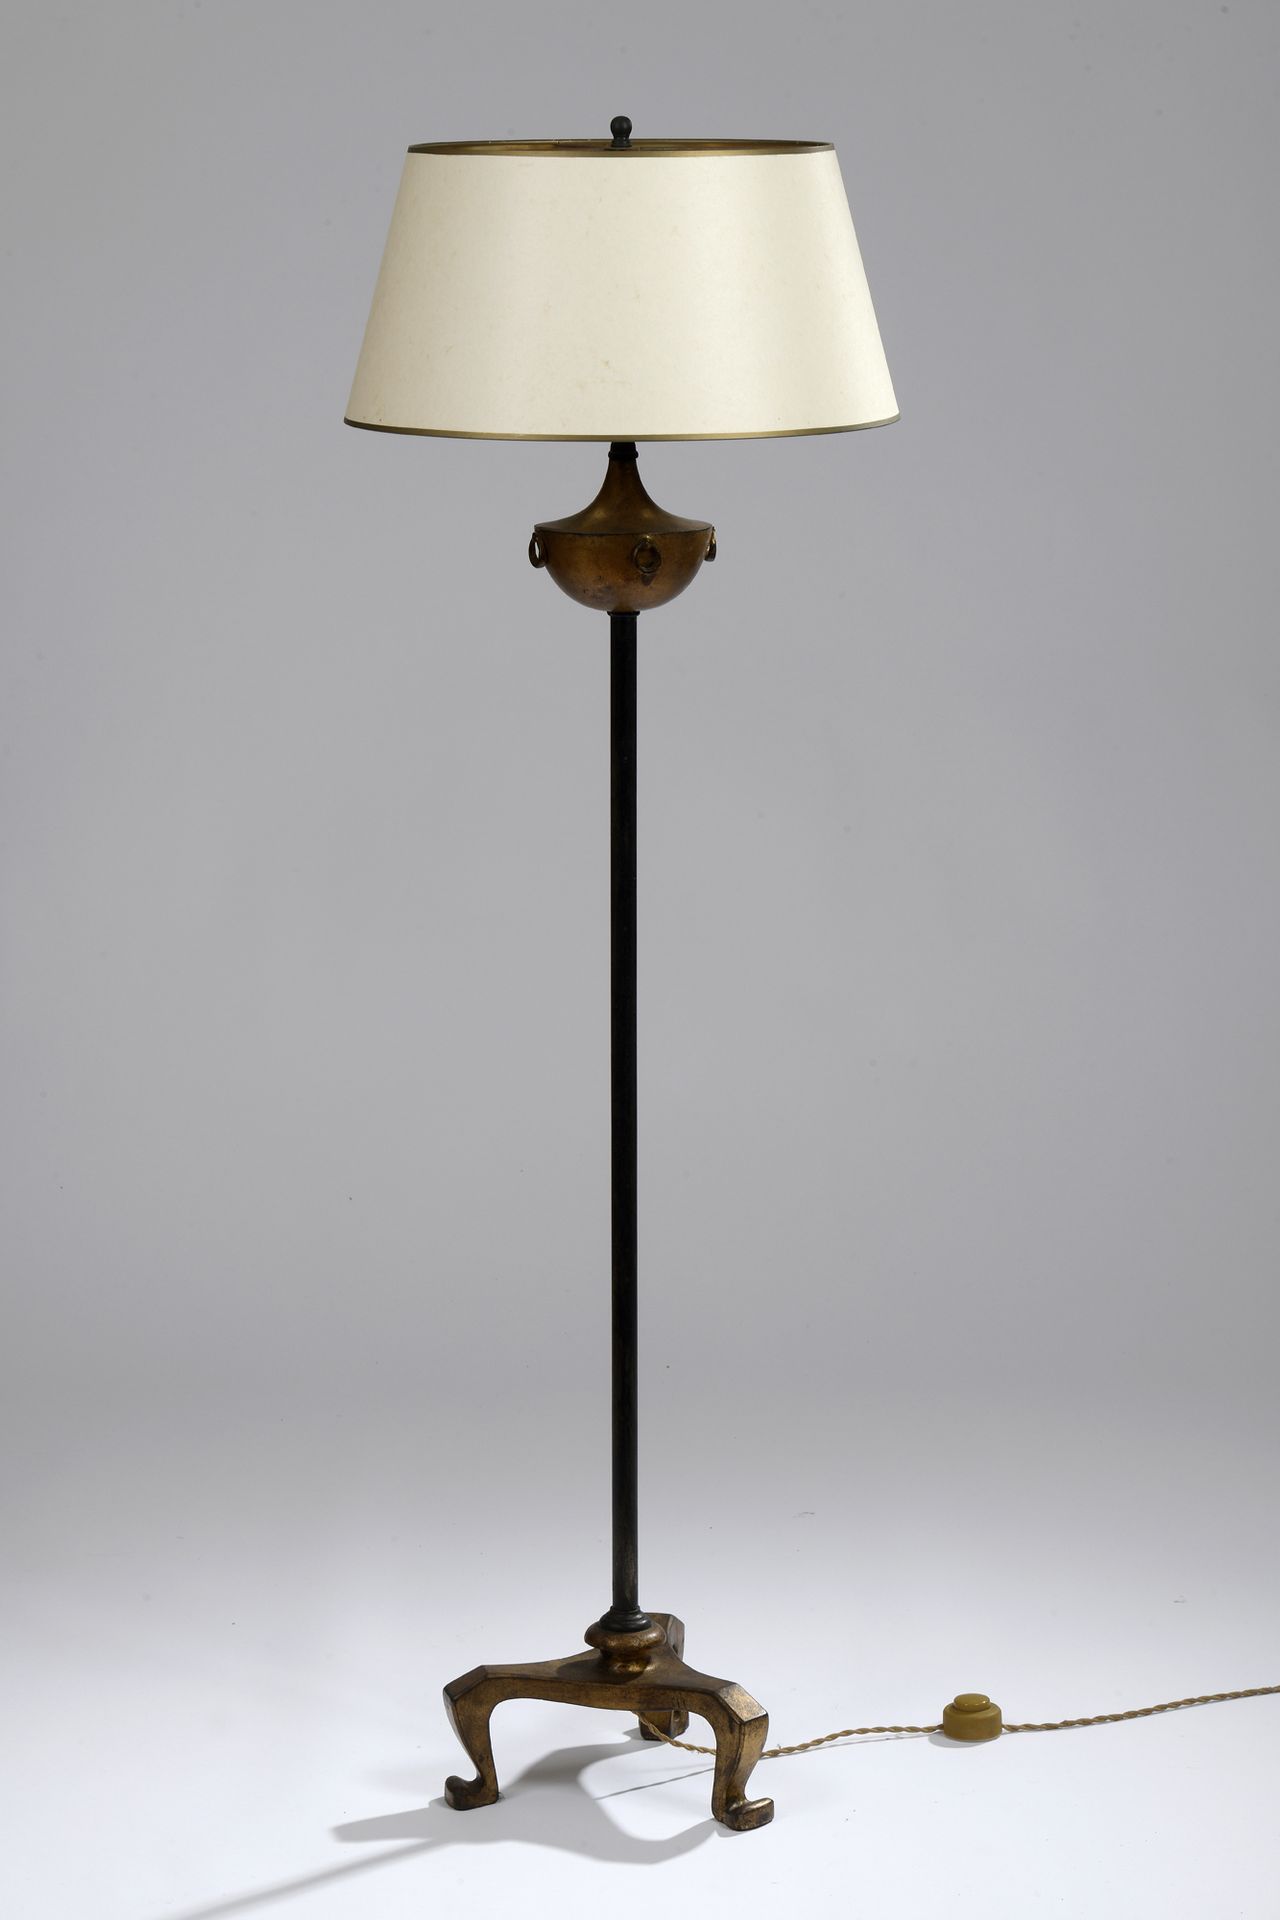 Null 上世纪五六十年代的作品，新古典主义风格
镀金金属灯饰，三脚架底座。 
H.高 136 厘米